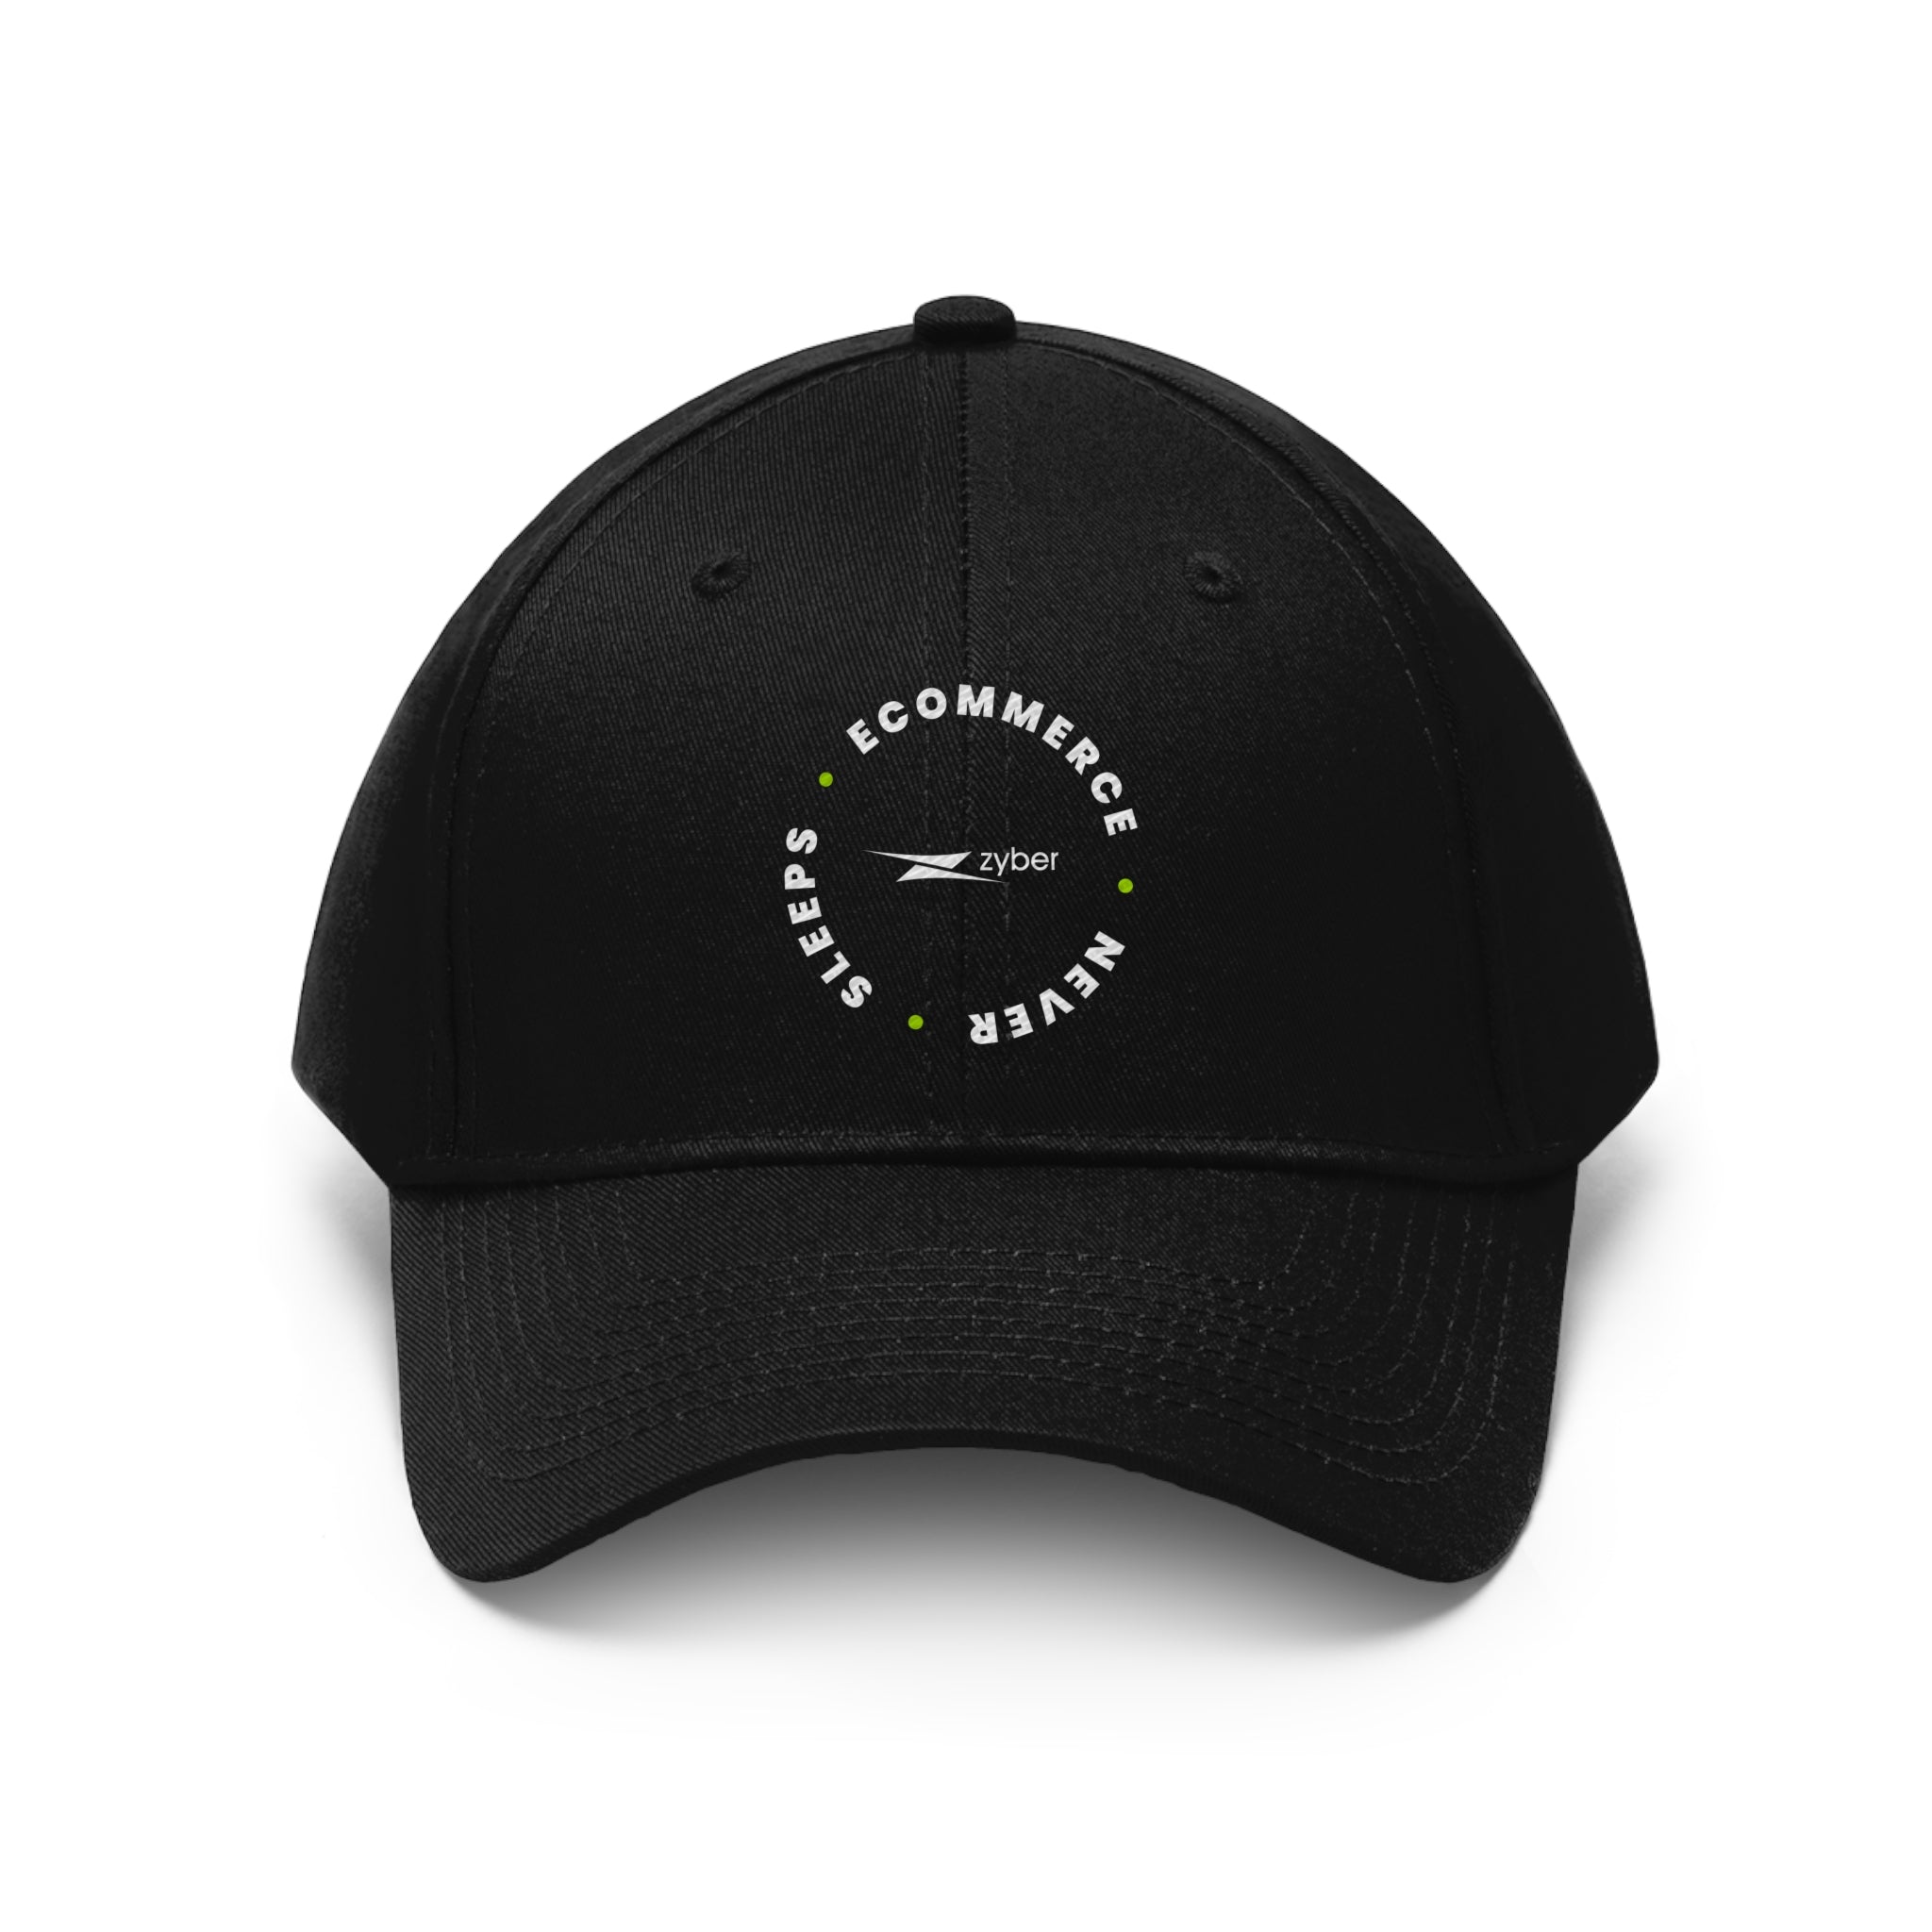 eCommerce never sleep hat